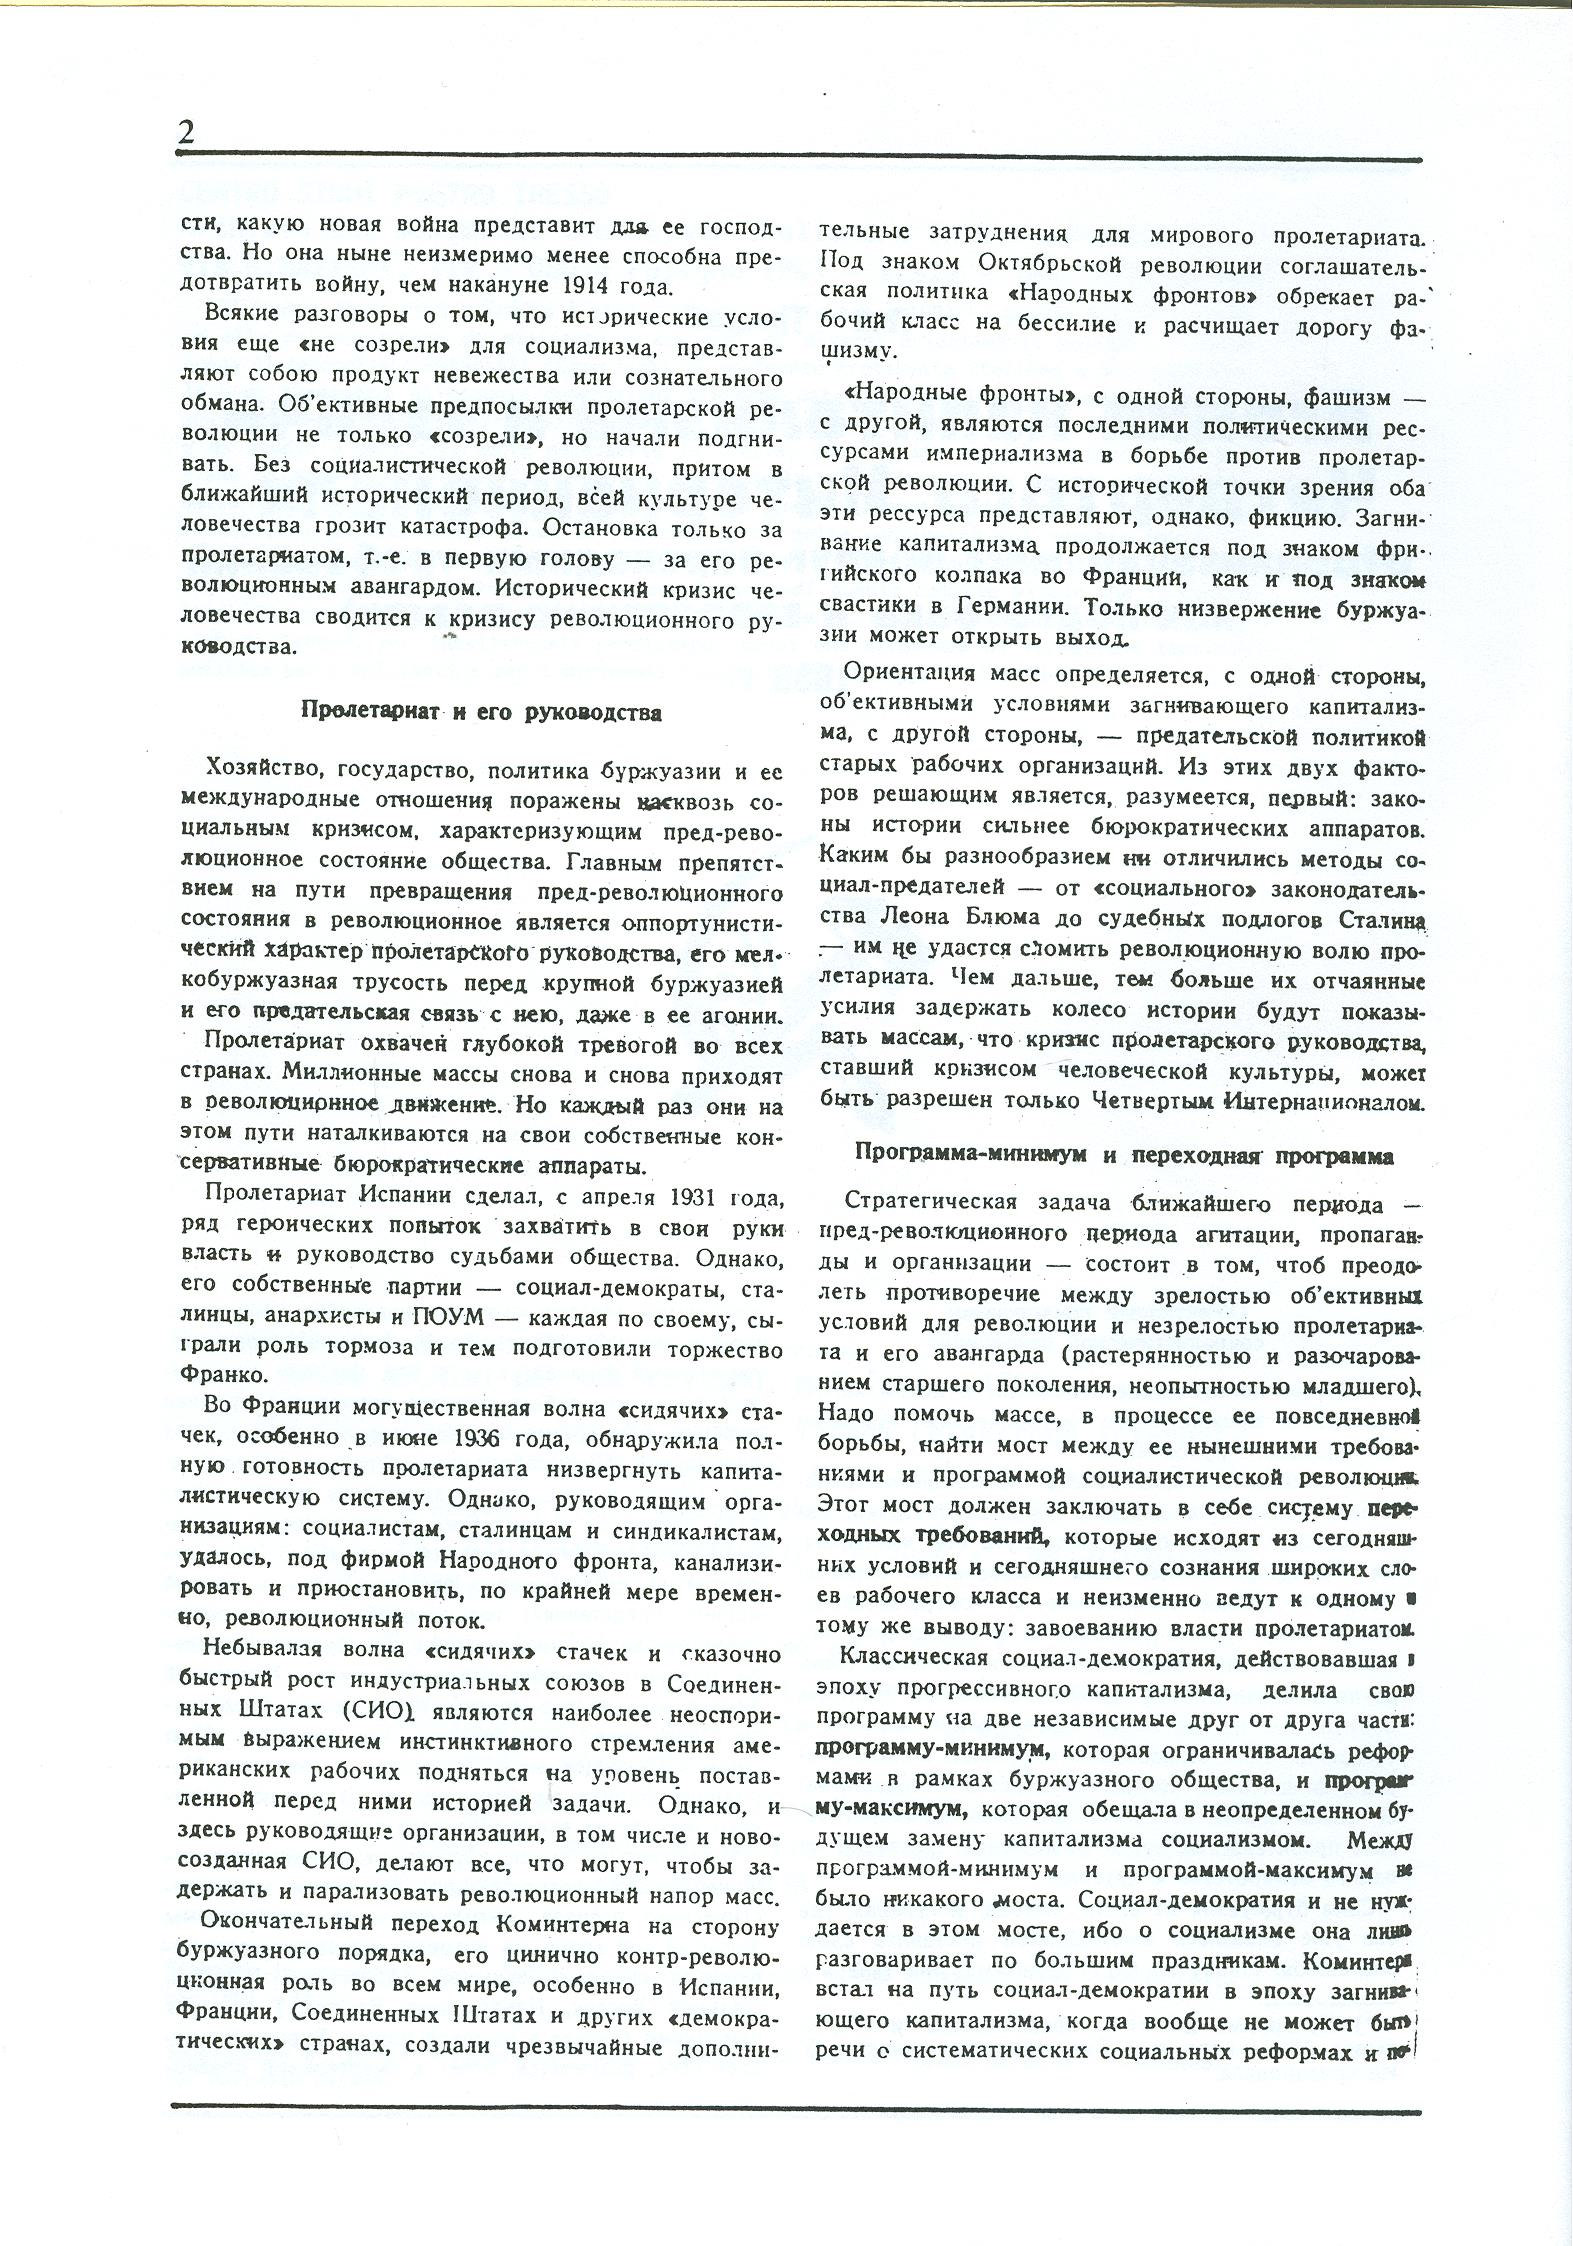 Dagli archivi del bolscevismo n. 1 (marzo 1986) - pag. 2